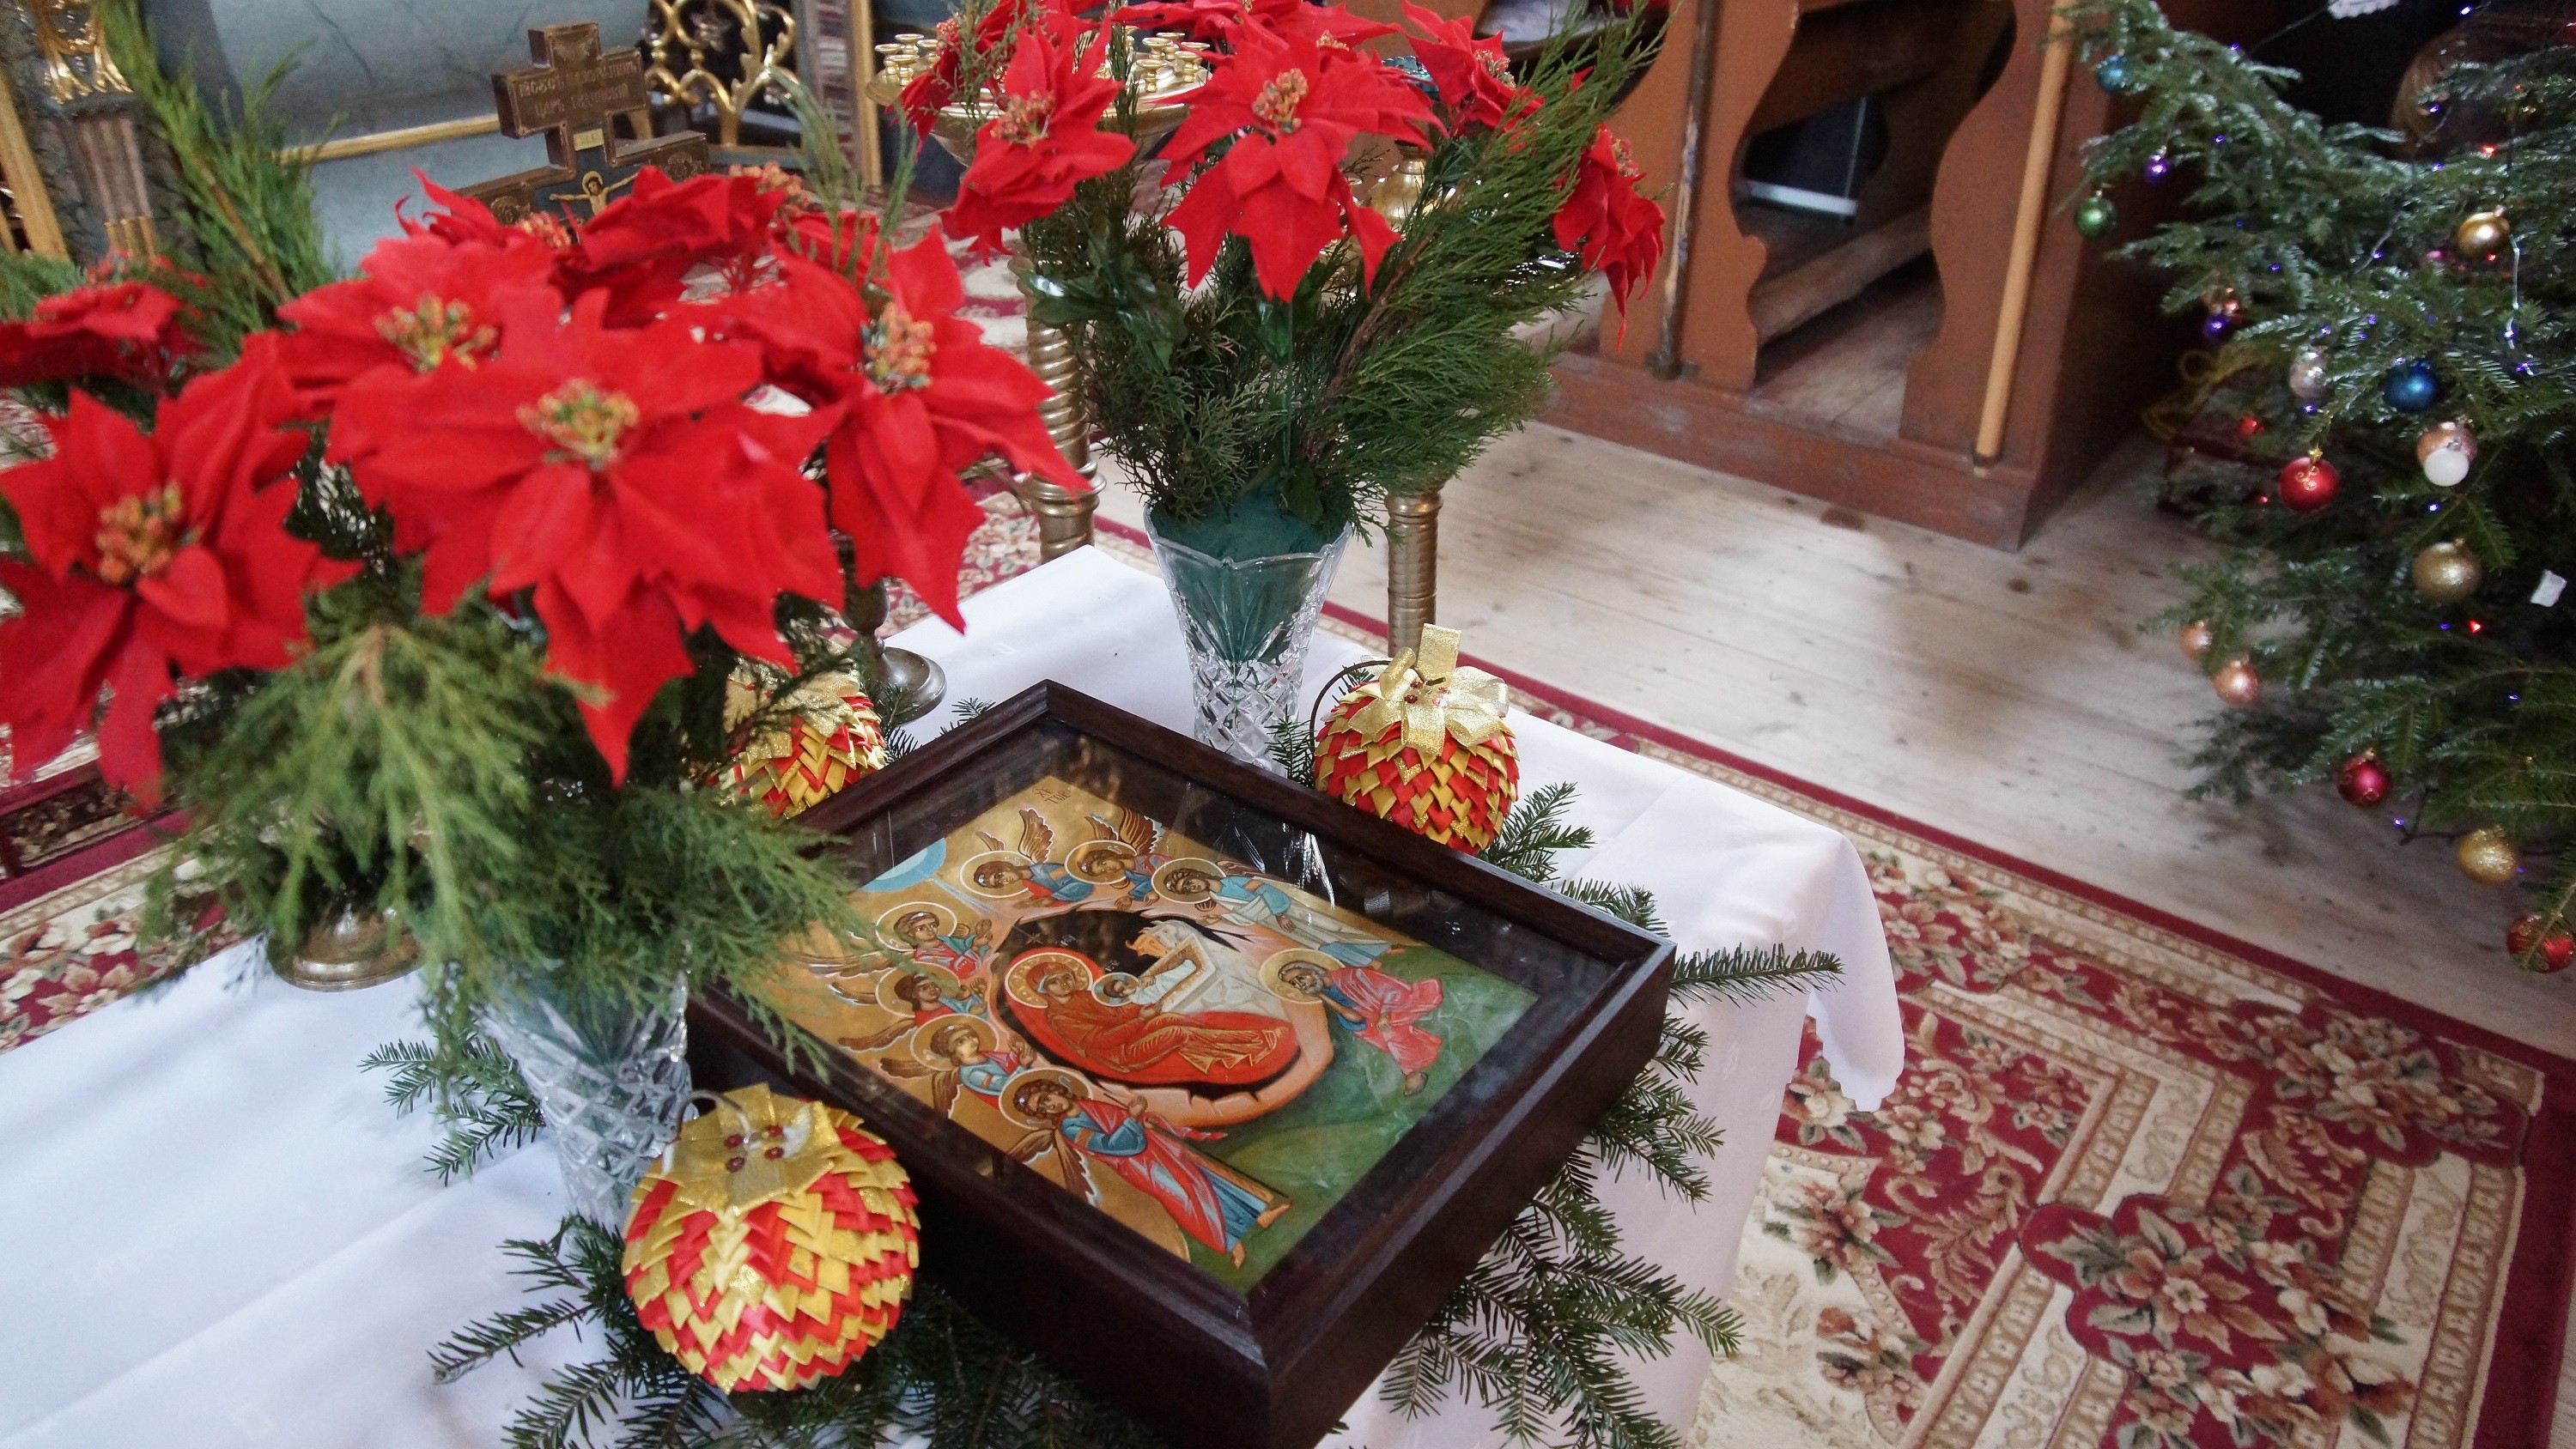 ikona z przedstawieniem Bożego Narodzenia. Obraz za szkłem, w grubej drewnianej ramie leży na niewielkim stoliku, nakrytym białym obrusem. Obok ikony wysokie szklane wazony z czerwonymi kwiatami.